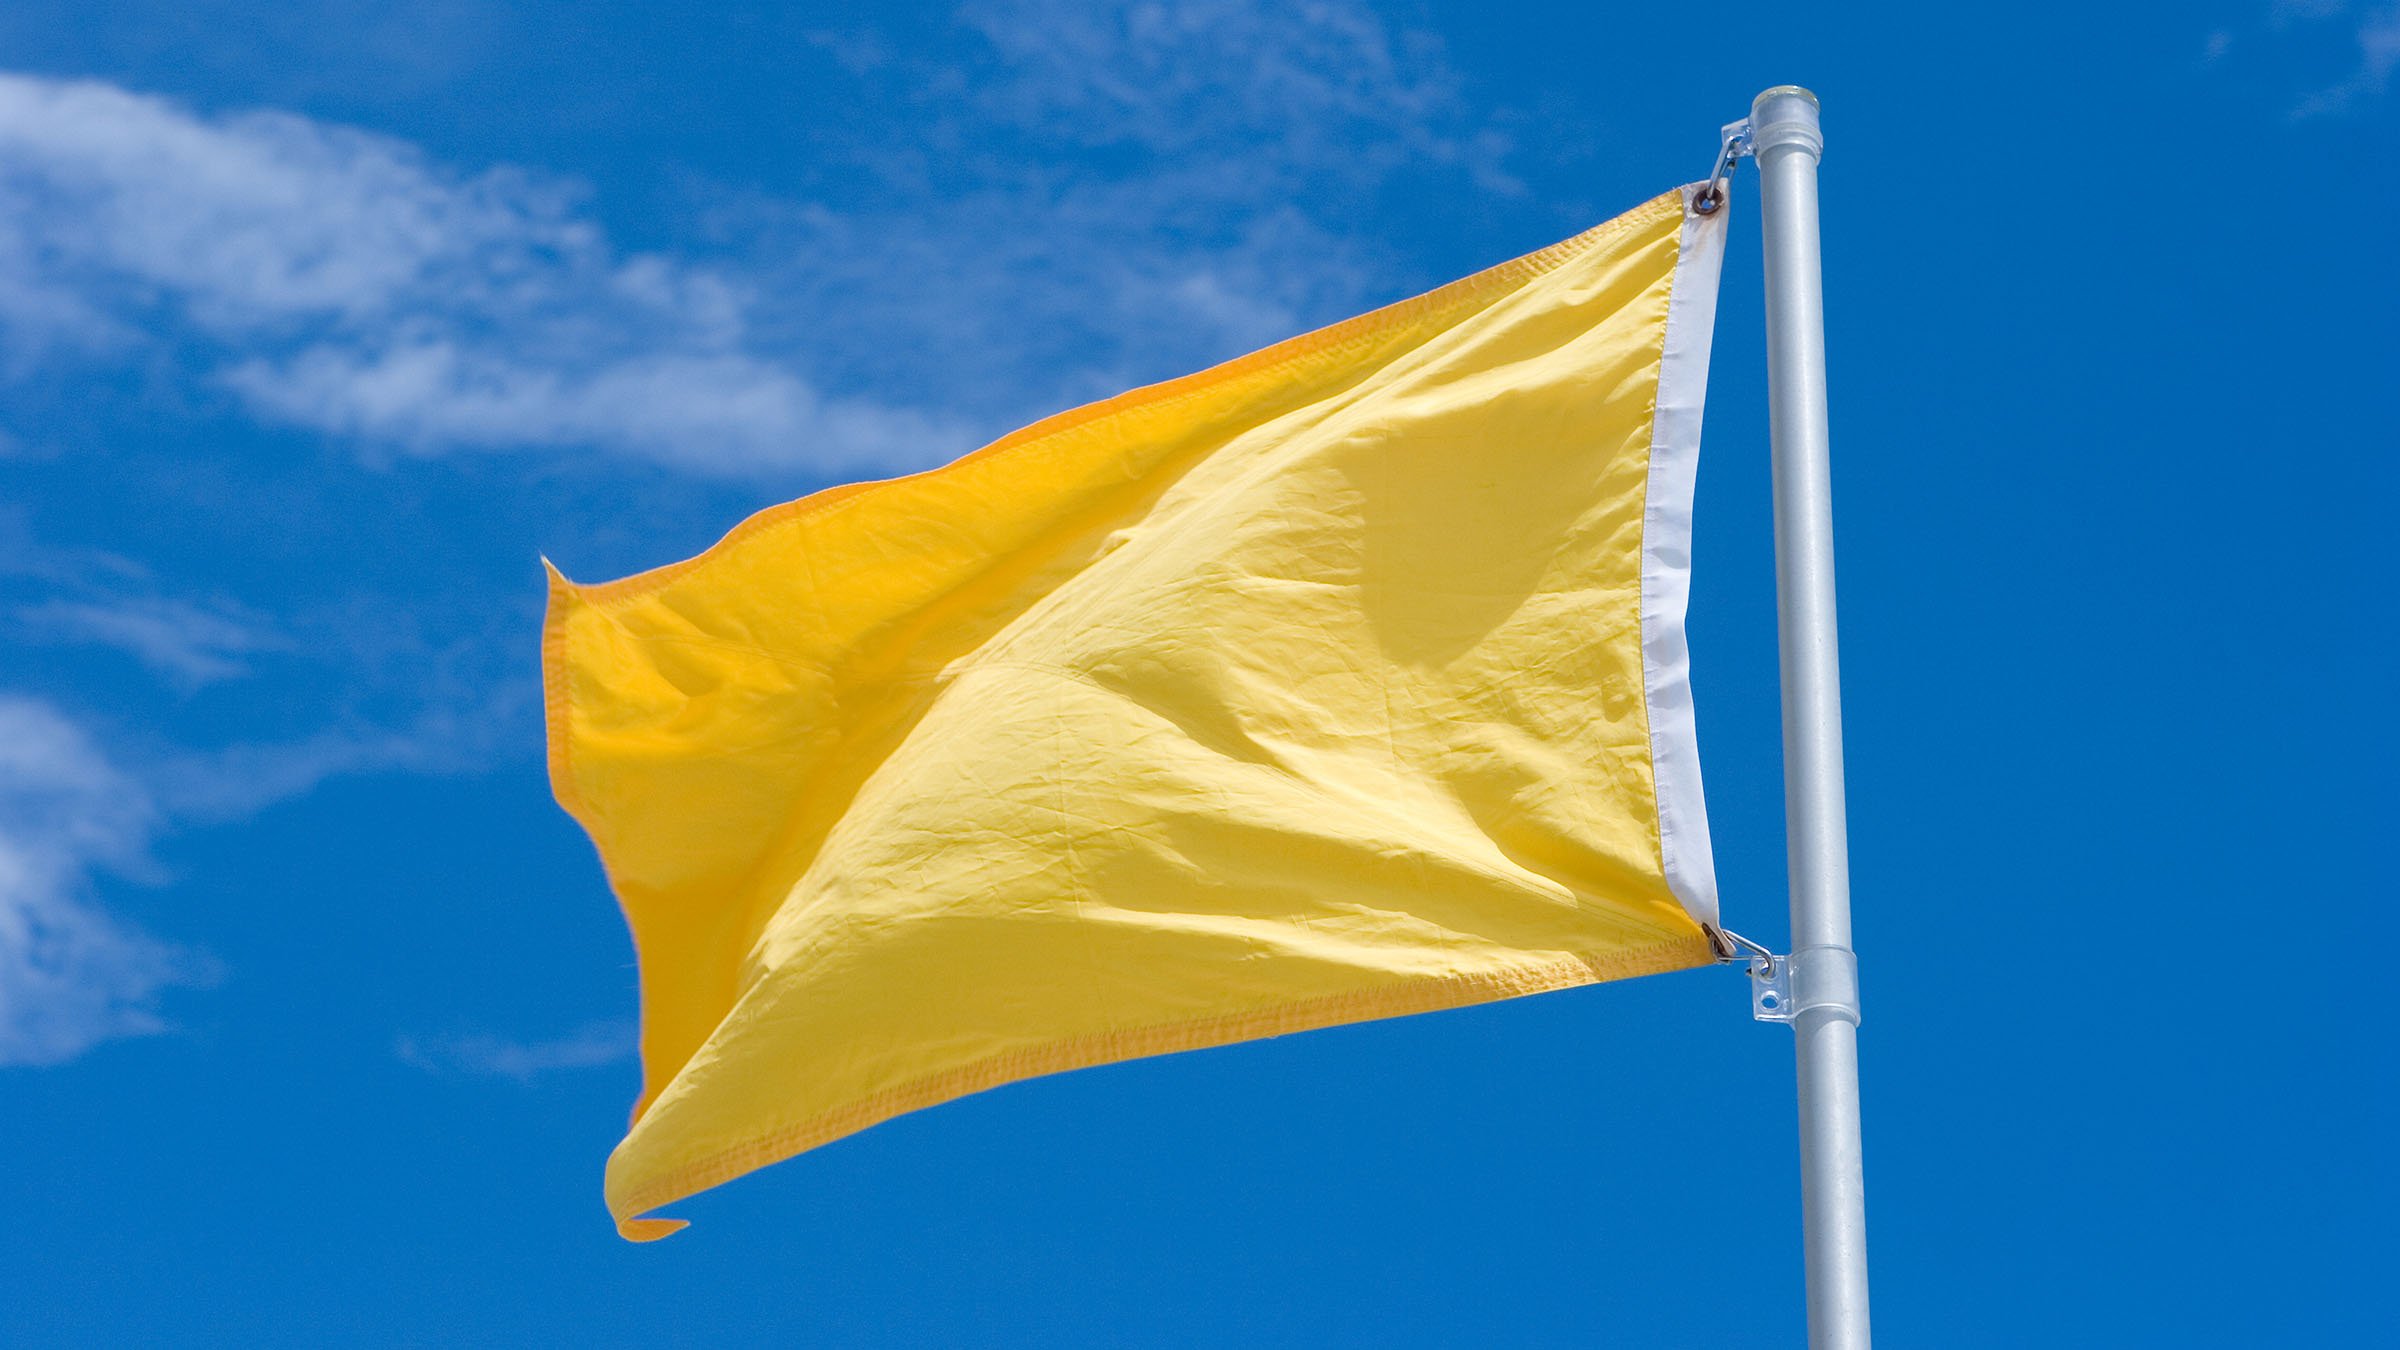 Co znamená žlutá vlajka?